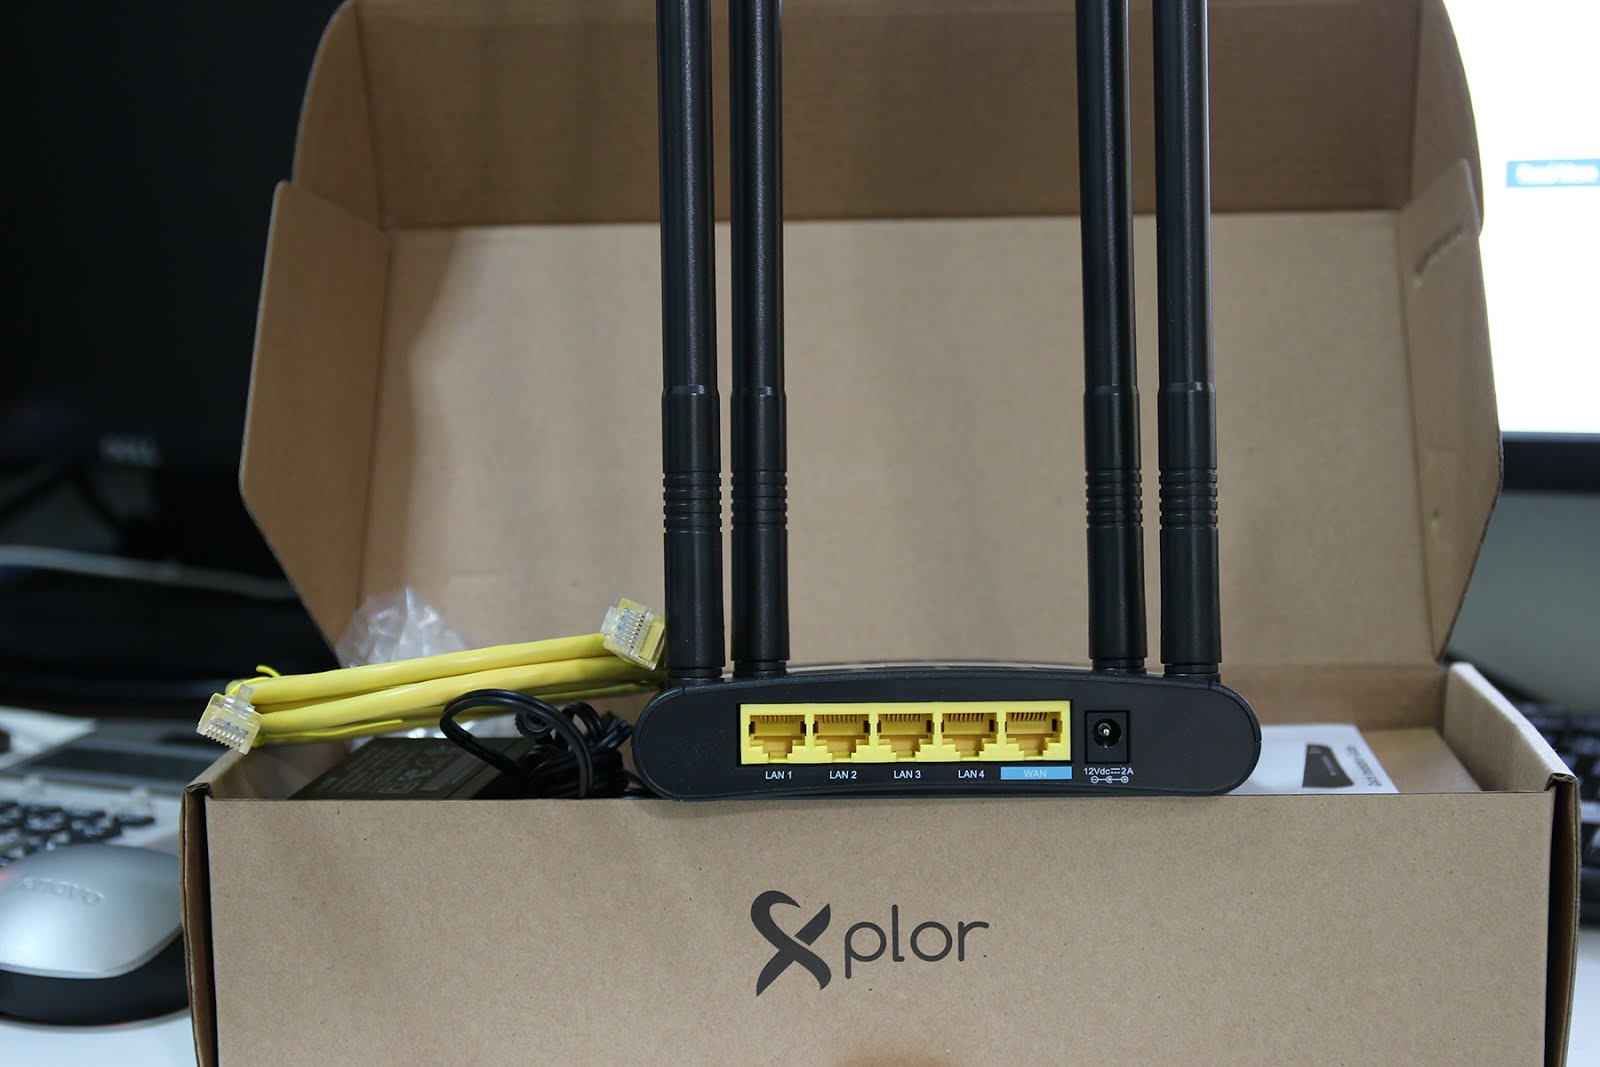 วิธีเซ็ต Router Xplor Ac1200 ให้เป็น Access Point – | เอก สามวา |